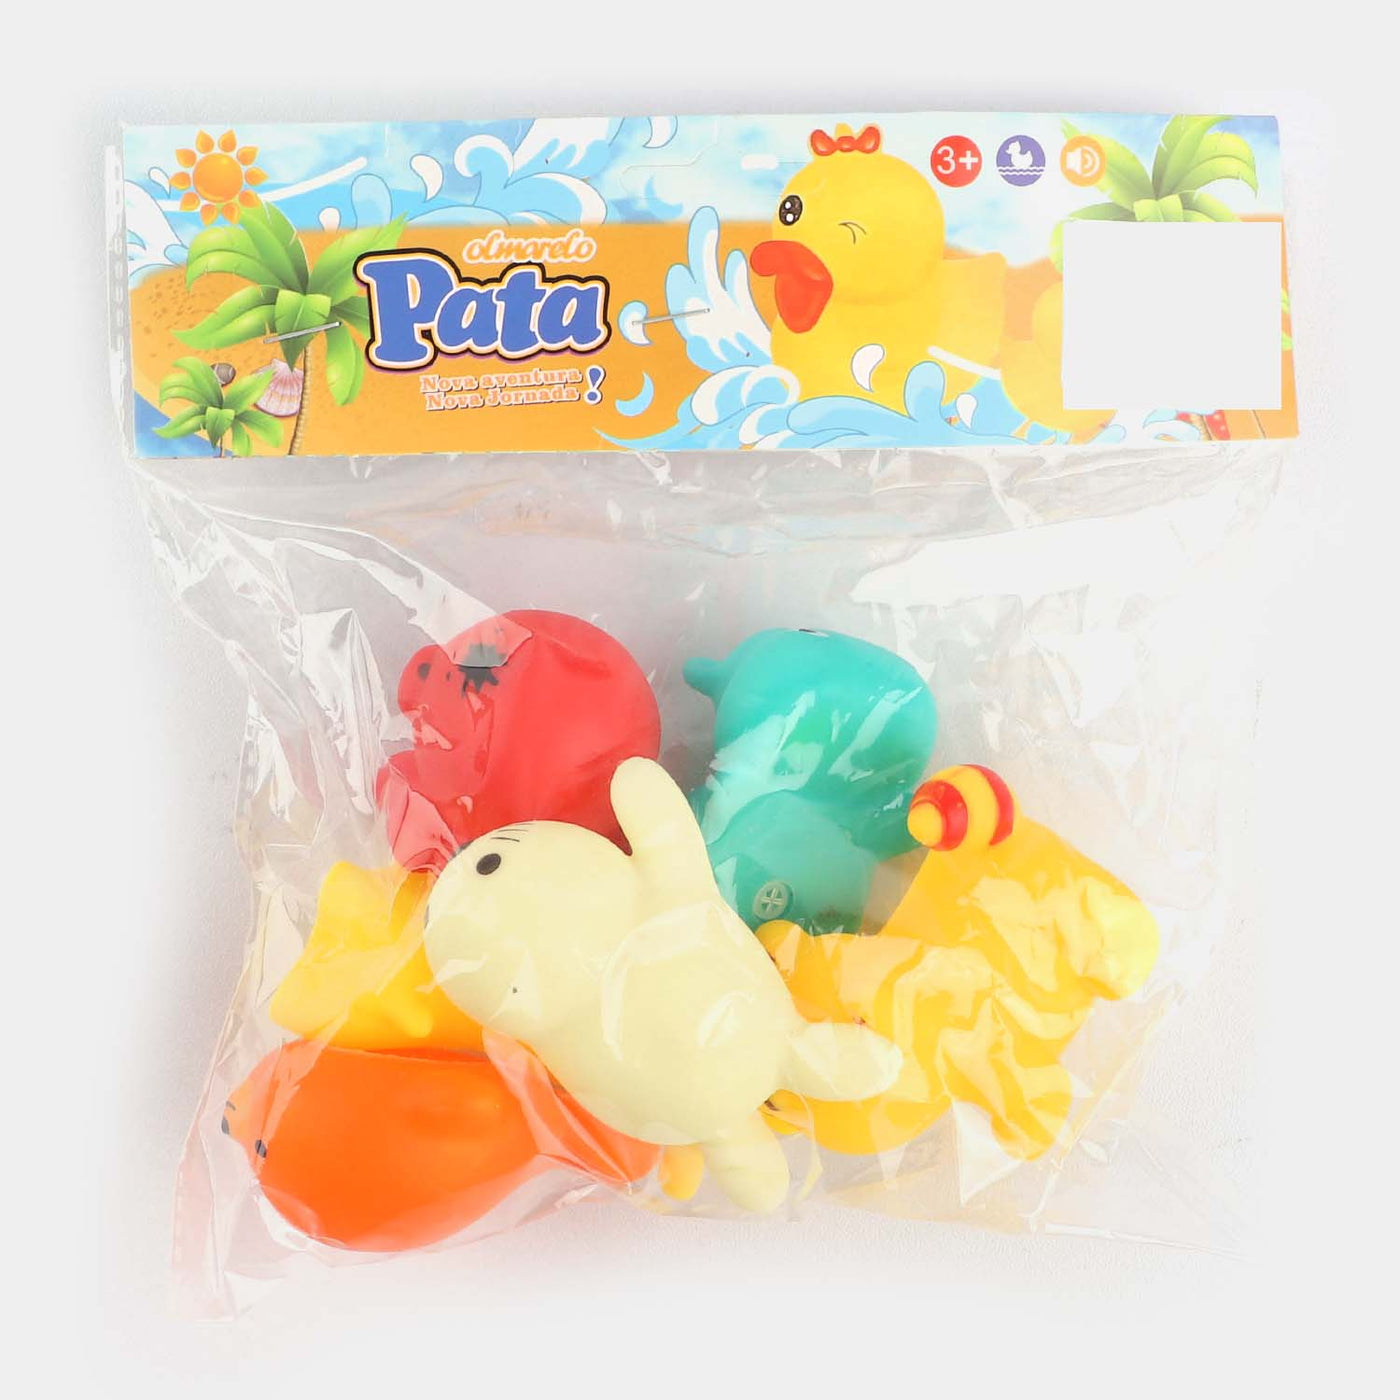 Multi-Color Rubber Soft Toys | 6PCs